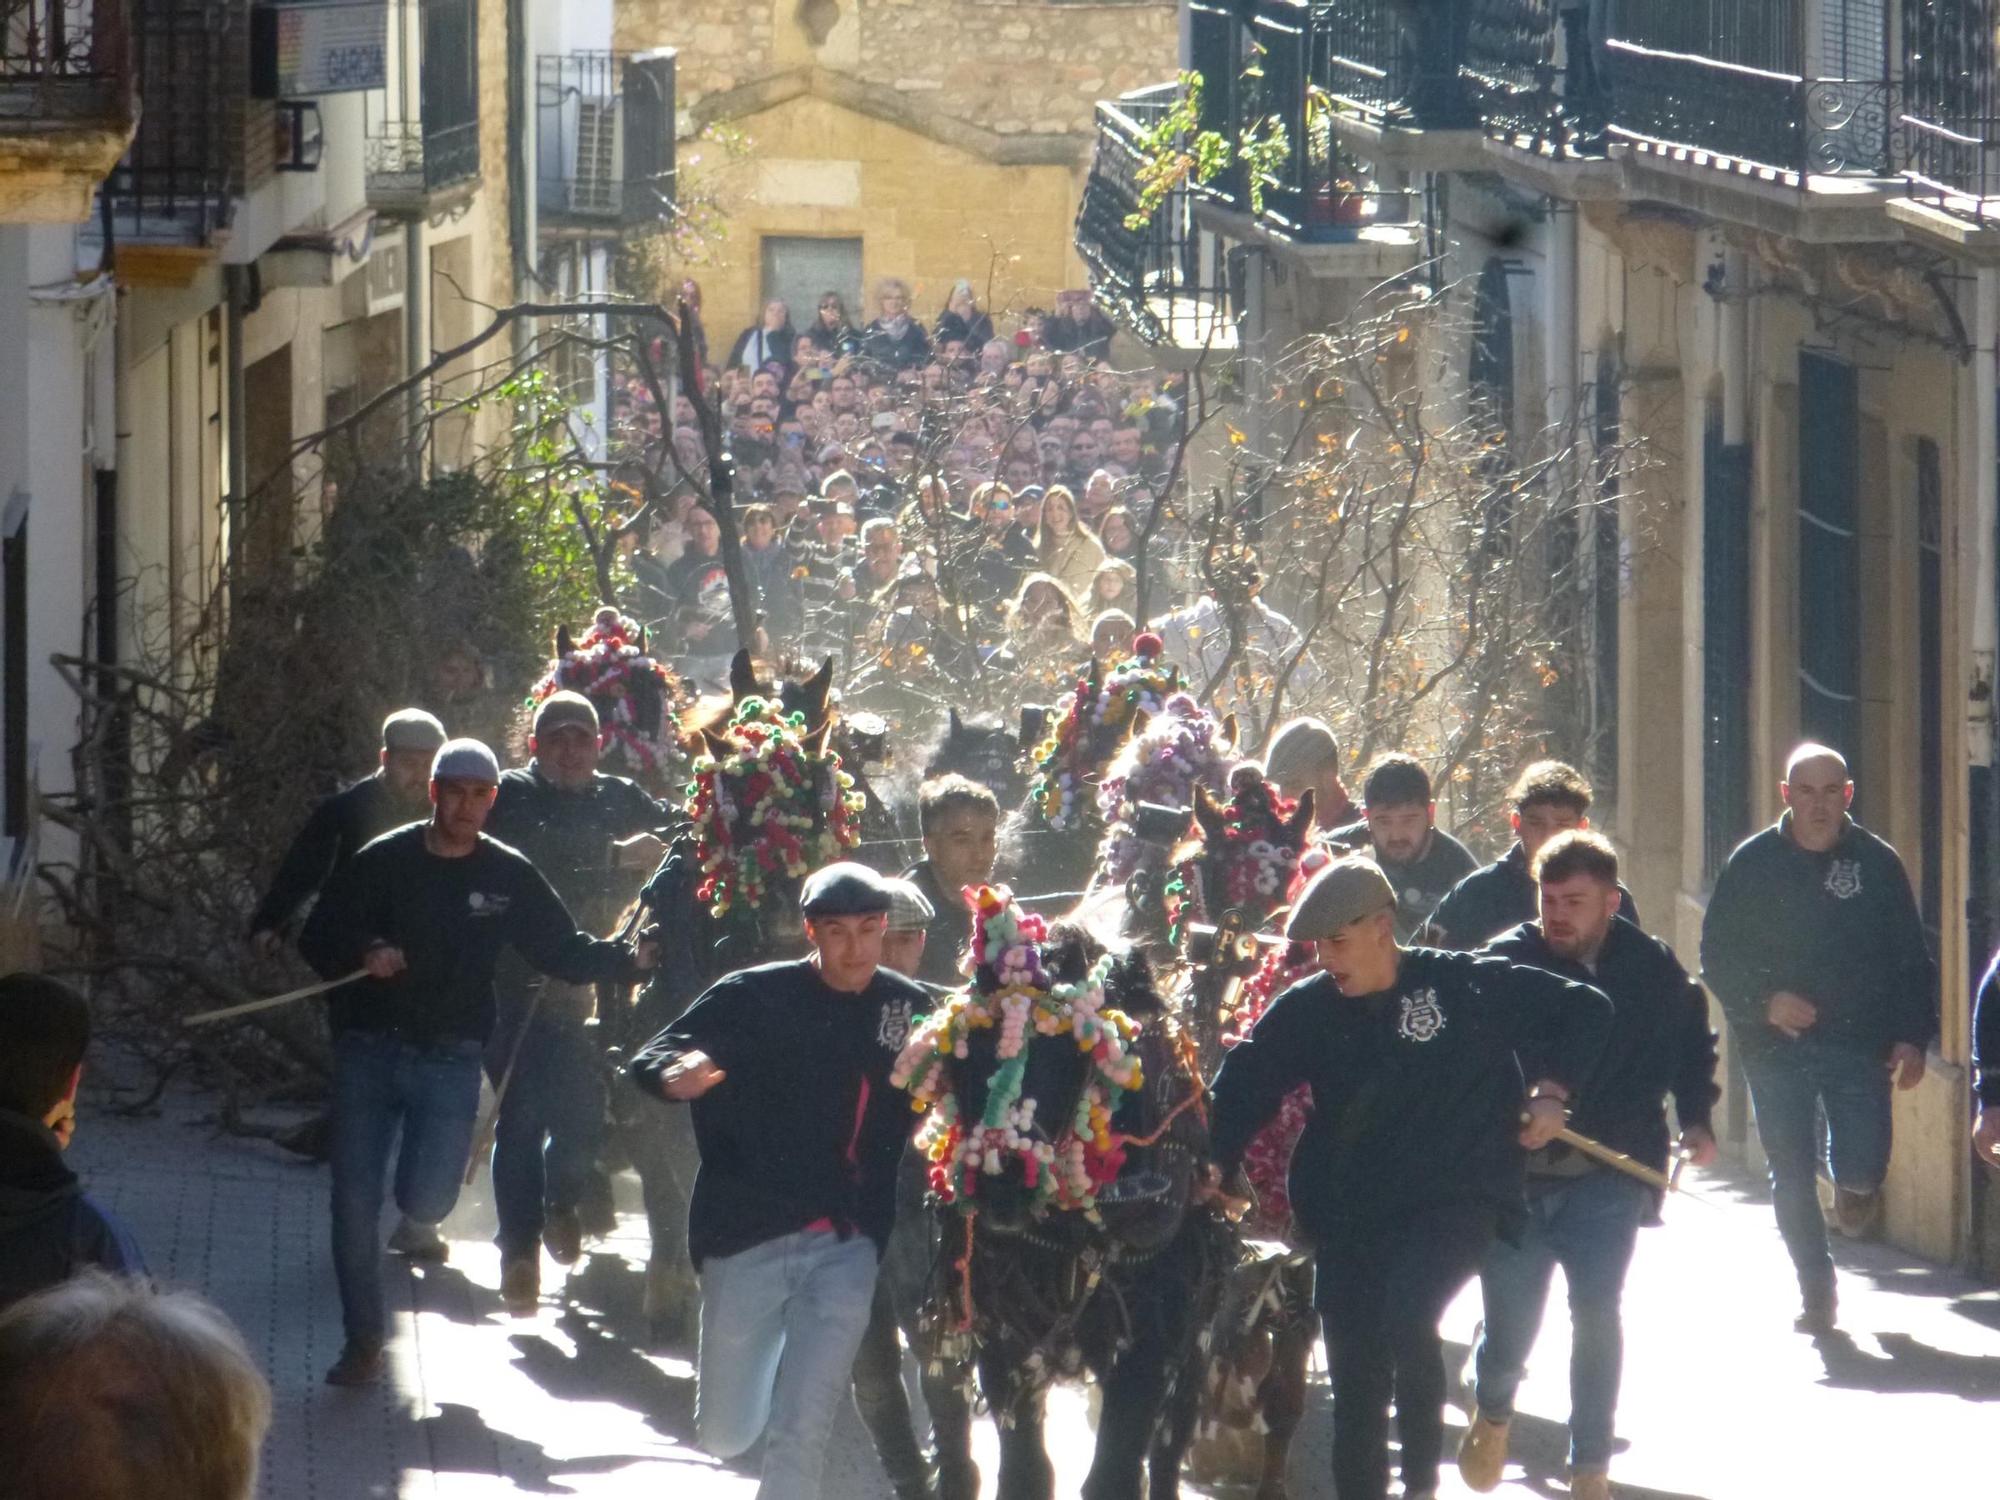 Las mejores imágenes de las espectaculares 'rossegades' de Albocàsser en Sant Antoni